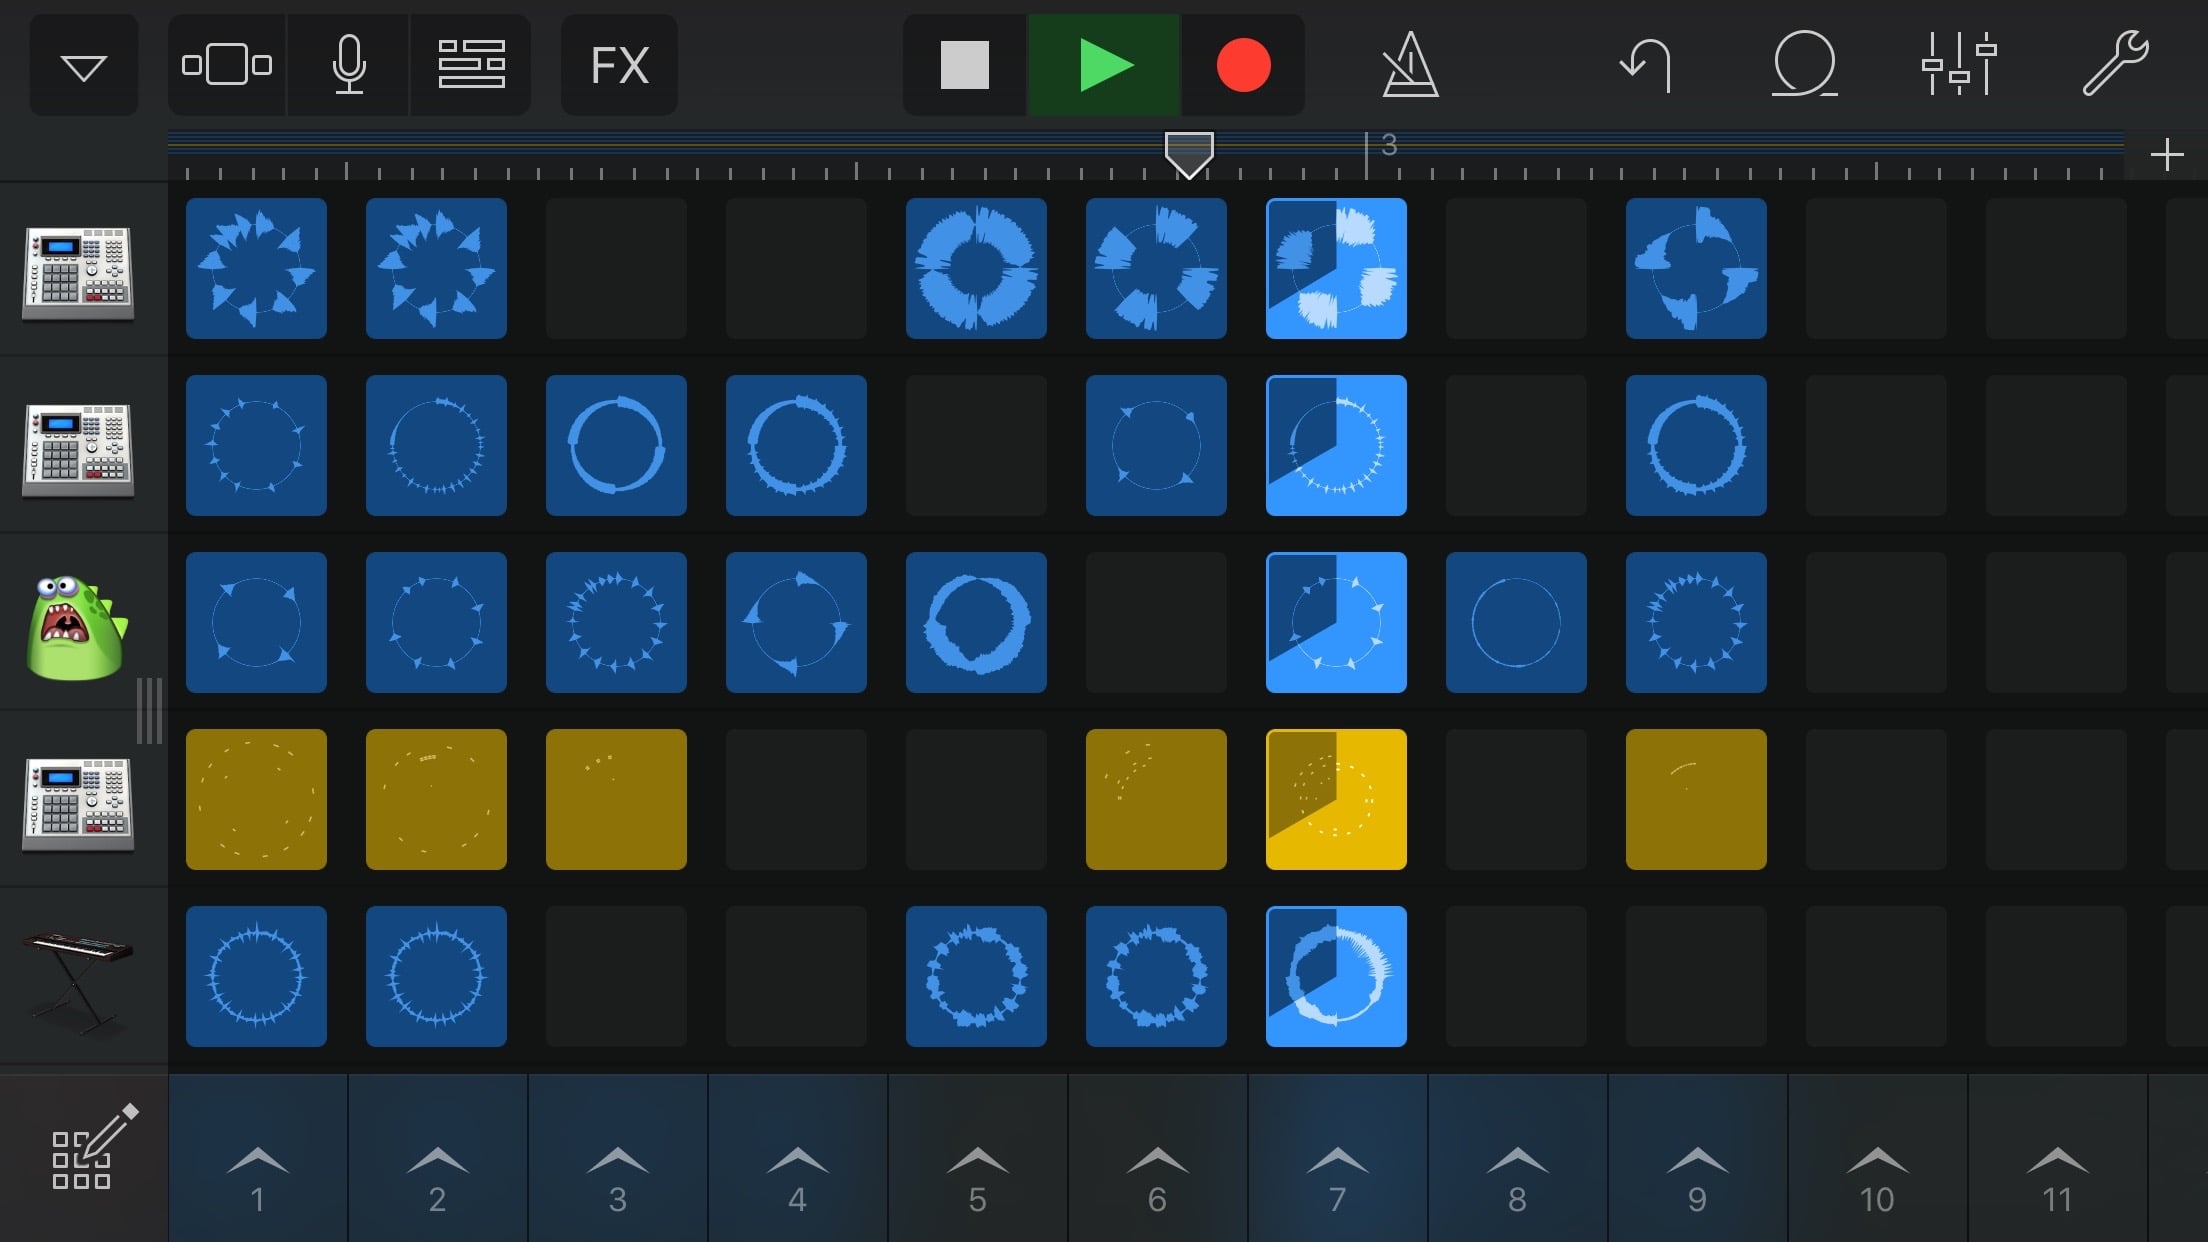 音楽制作ができるiosアプリ Garageband がエレクトロミュージック機能 Live Loops を追加 Ipod Love